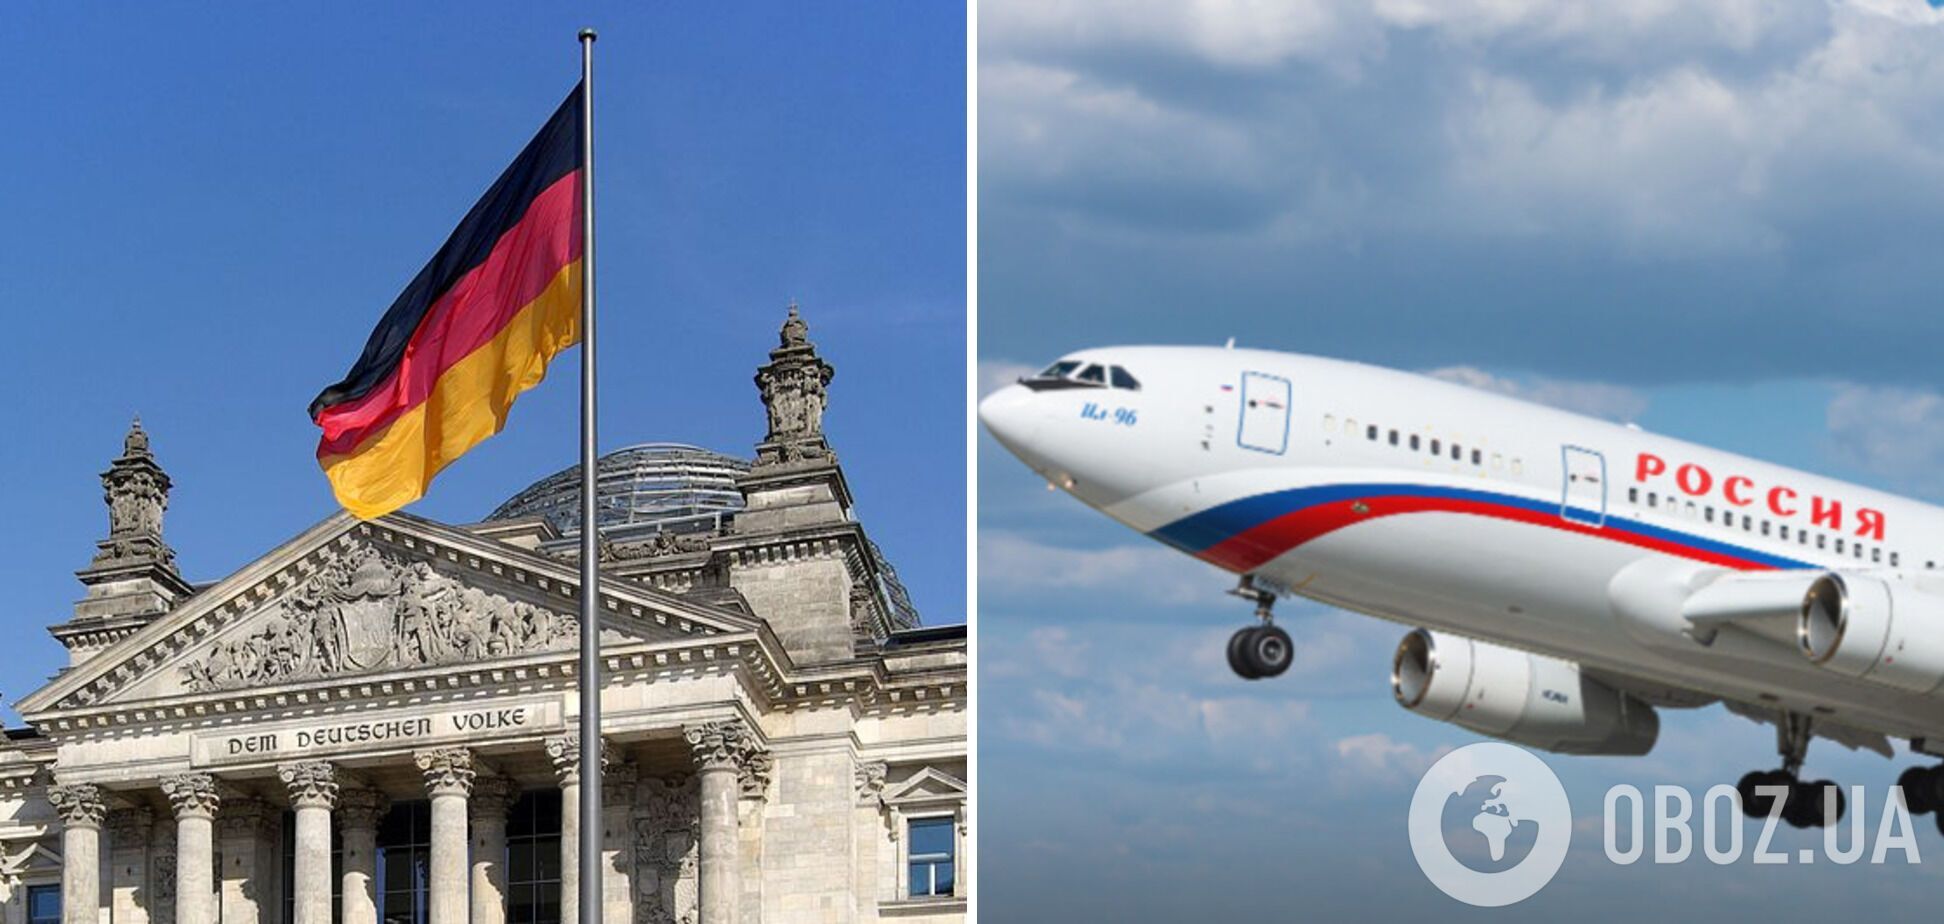 В Берлин на несколько часов прилетел самолет из Москвы, хотя воздушное пространство ЕС закрыто для российских перевозчиков - СМИ